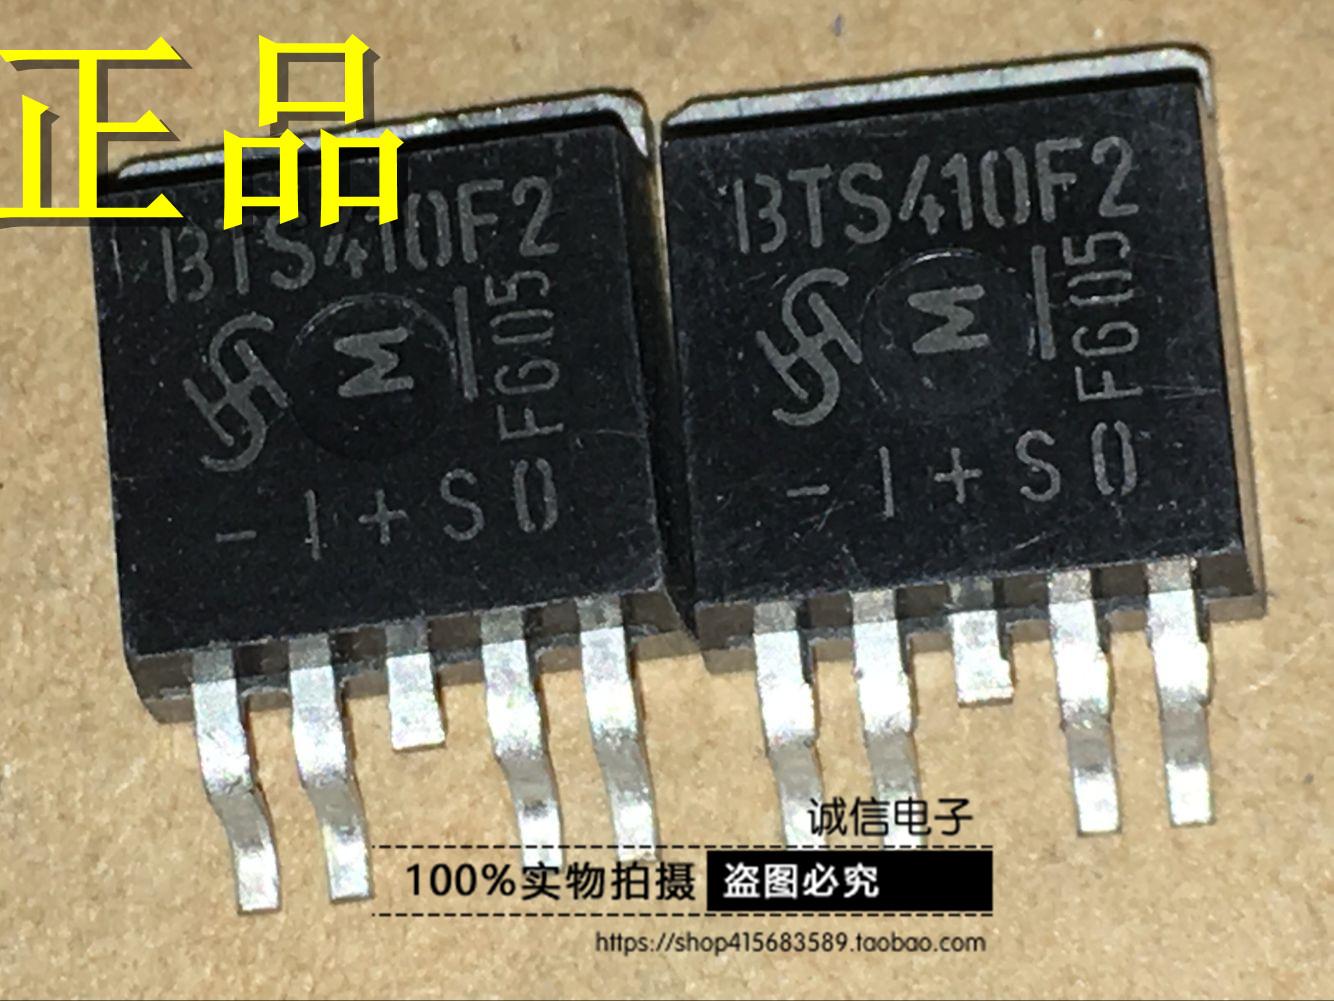 诚和信 全新原装进口 BTS410F2 汽车电脑板常用易损芯片